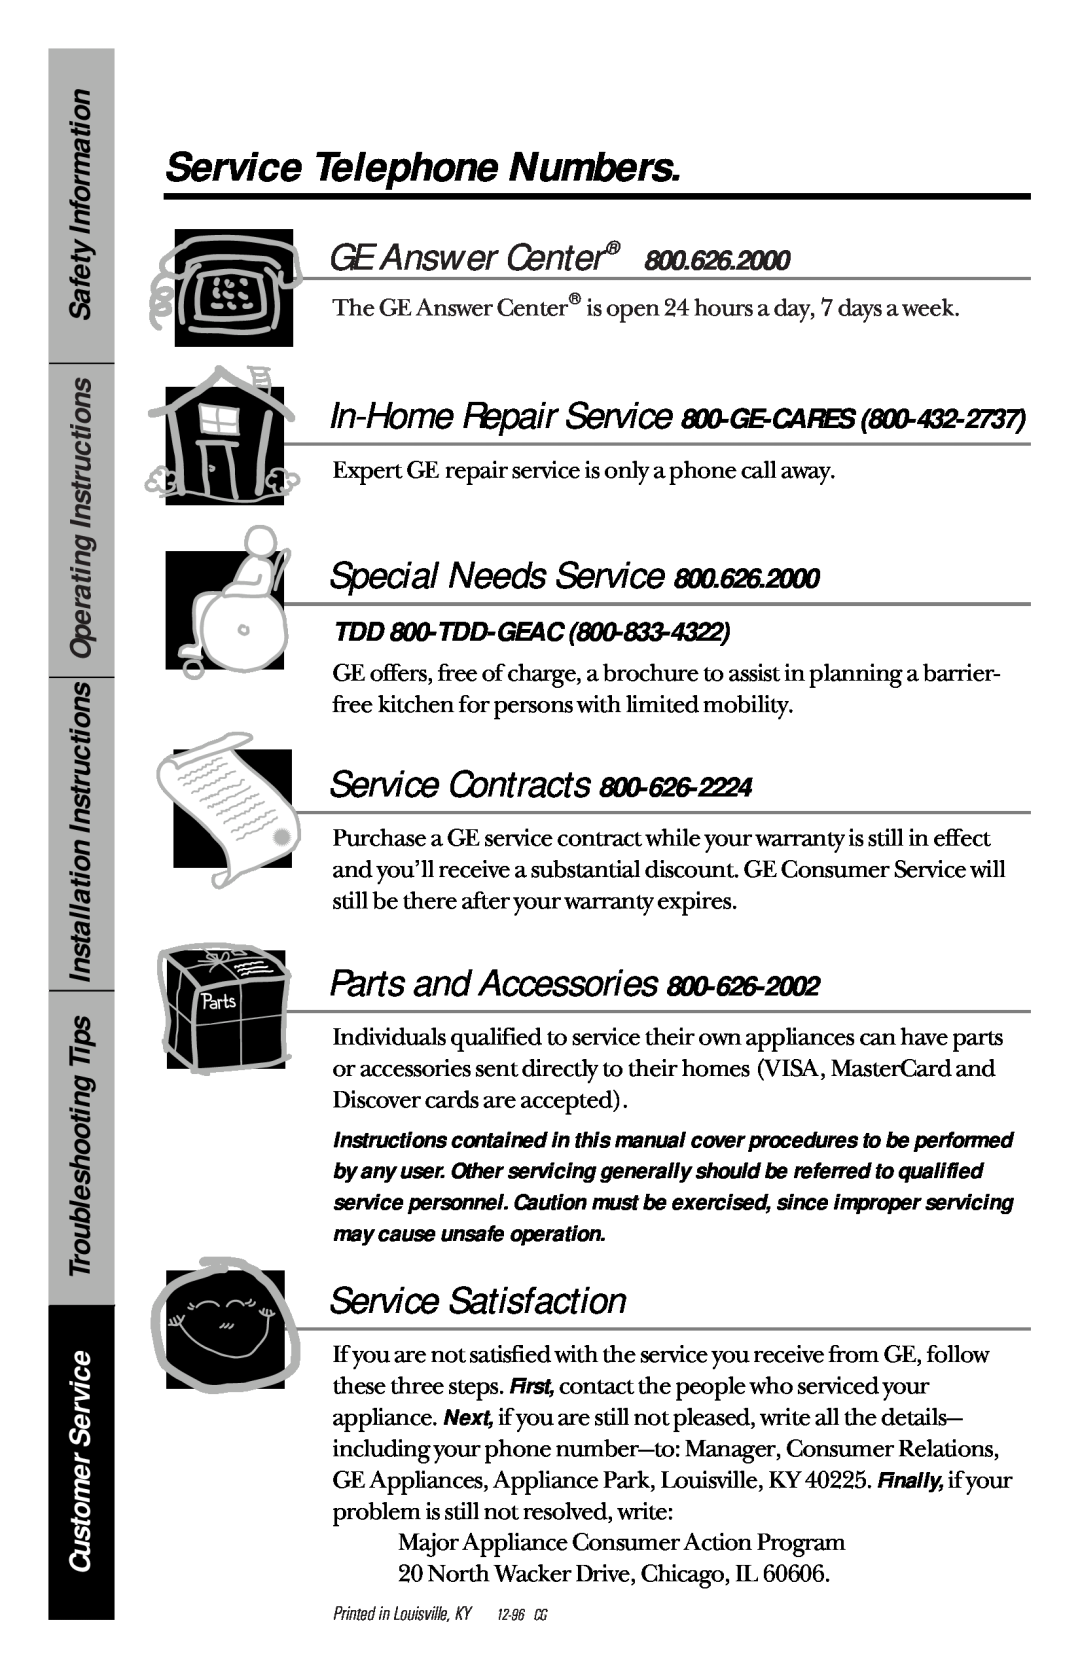 GE JBP63, JBP77, JBP76 Service Telephone Numbers, In-Home Repair Service 800-GE-CARES, TDD 800-TDD-GEAC, GE Answer Center 